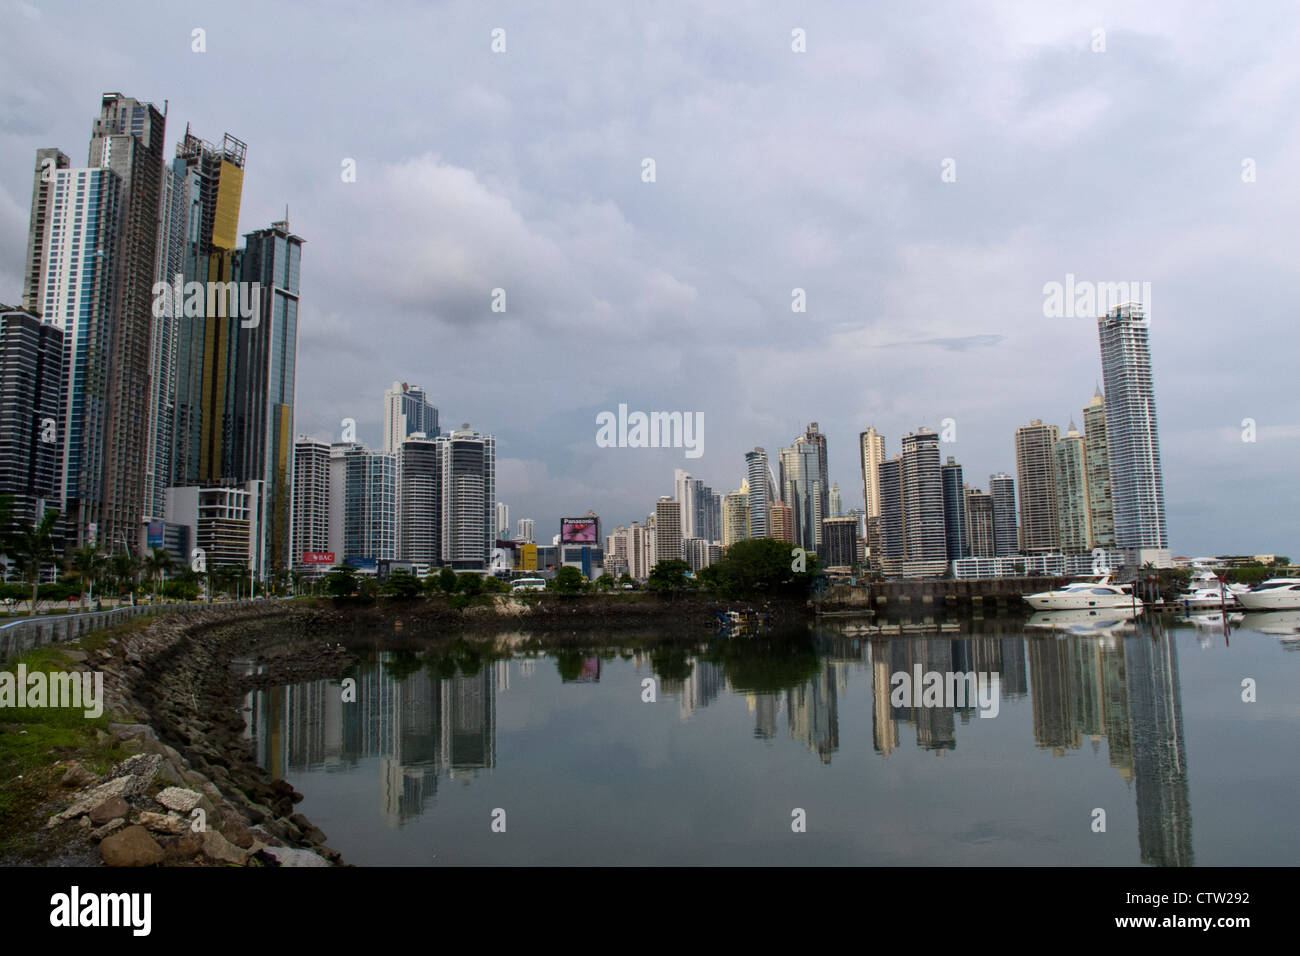 Vista general del rascacielos / skyline con bay / vista al agua, Ciudad de Panamá, Panamá Foto de stock